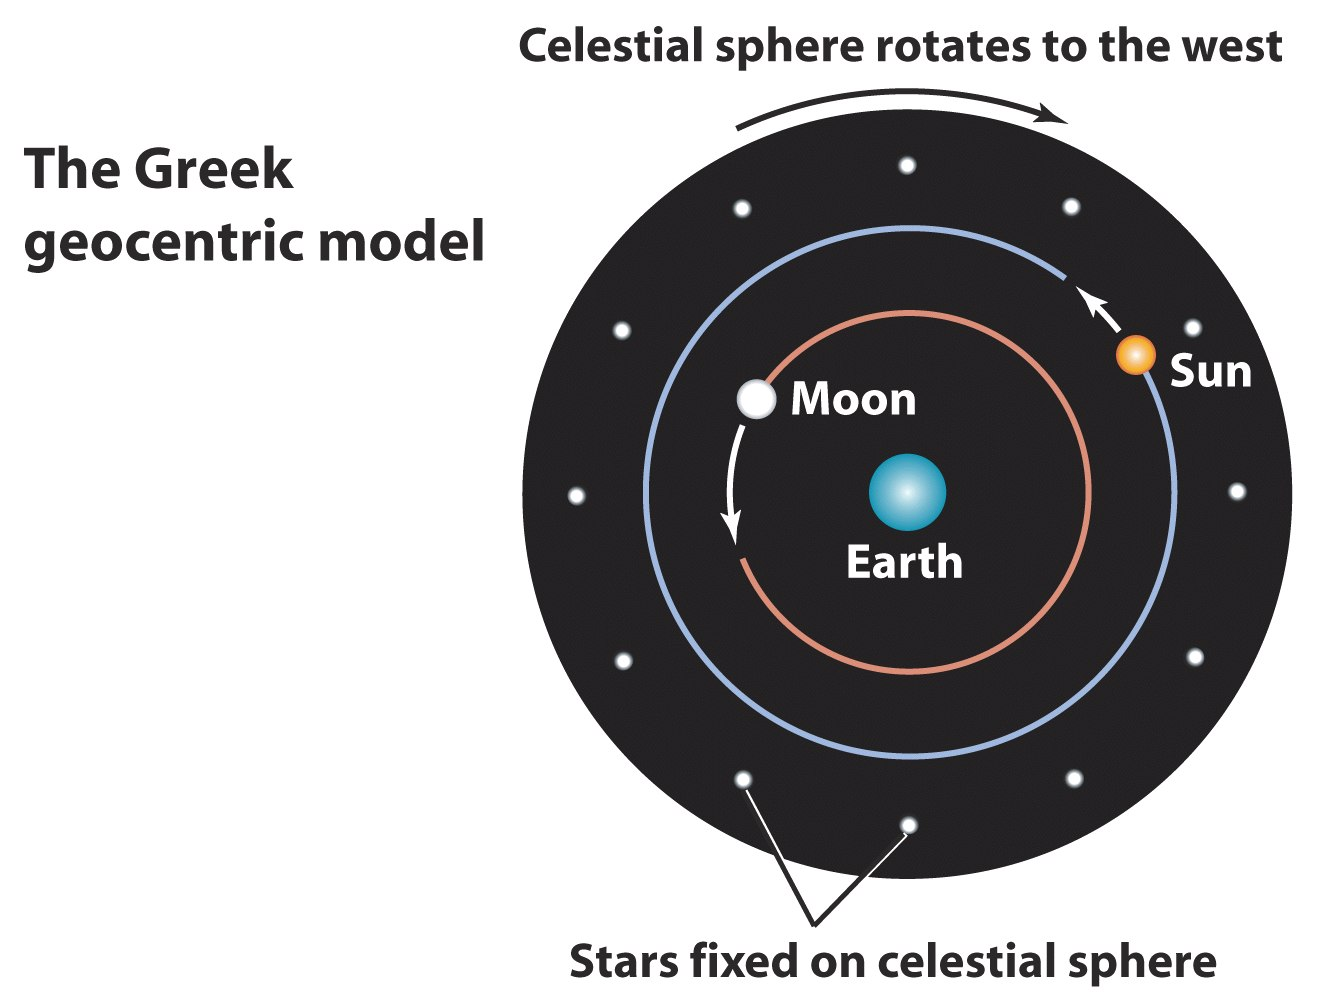 L Universo Geocentrico La sfera celeste ruota verso Ovest Luna Terra Sole Gli antichi greci e cinesi avevano sviluppato un modello di universo geocentrico.